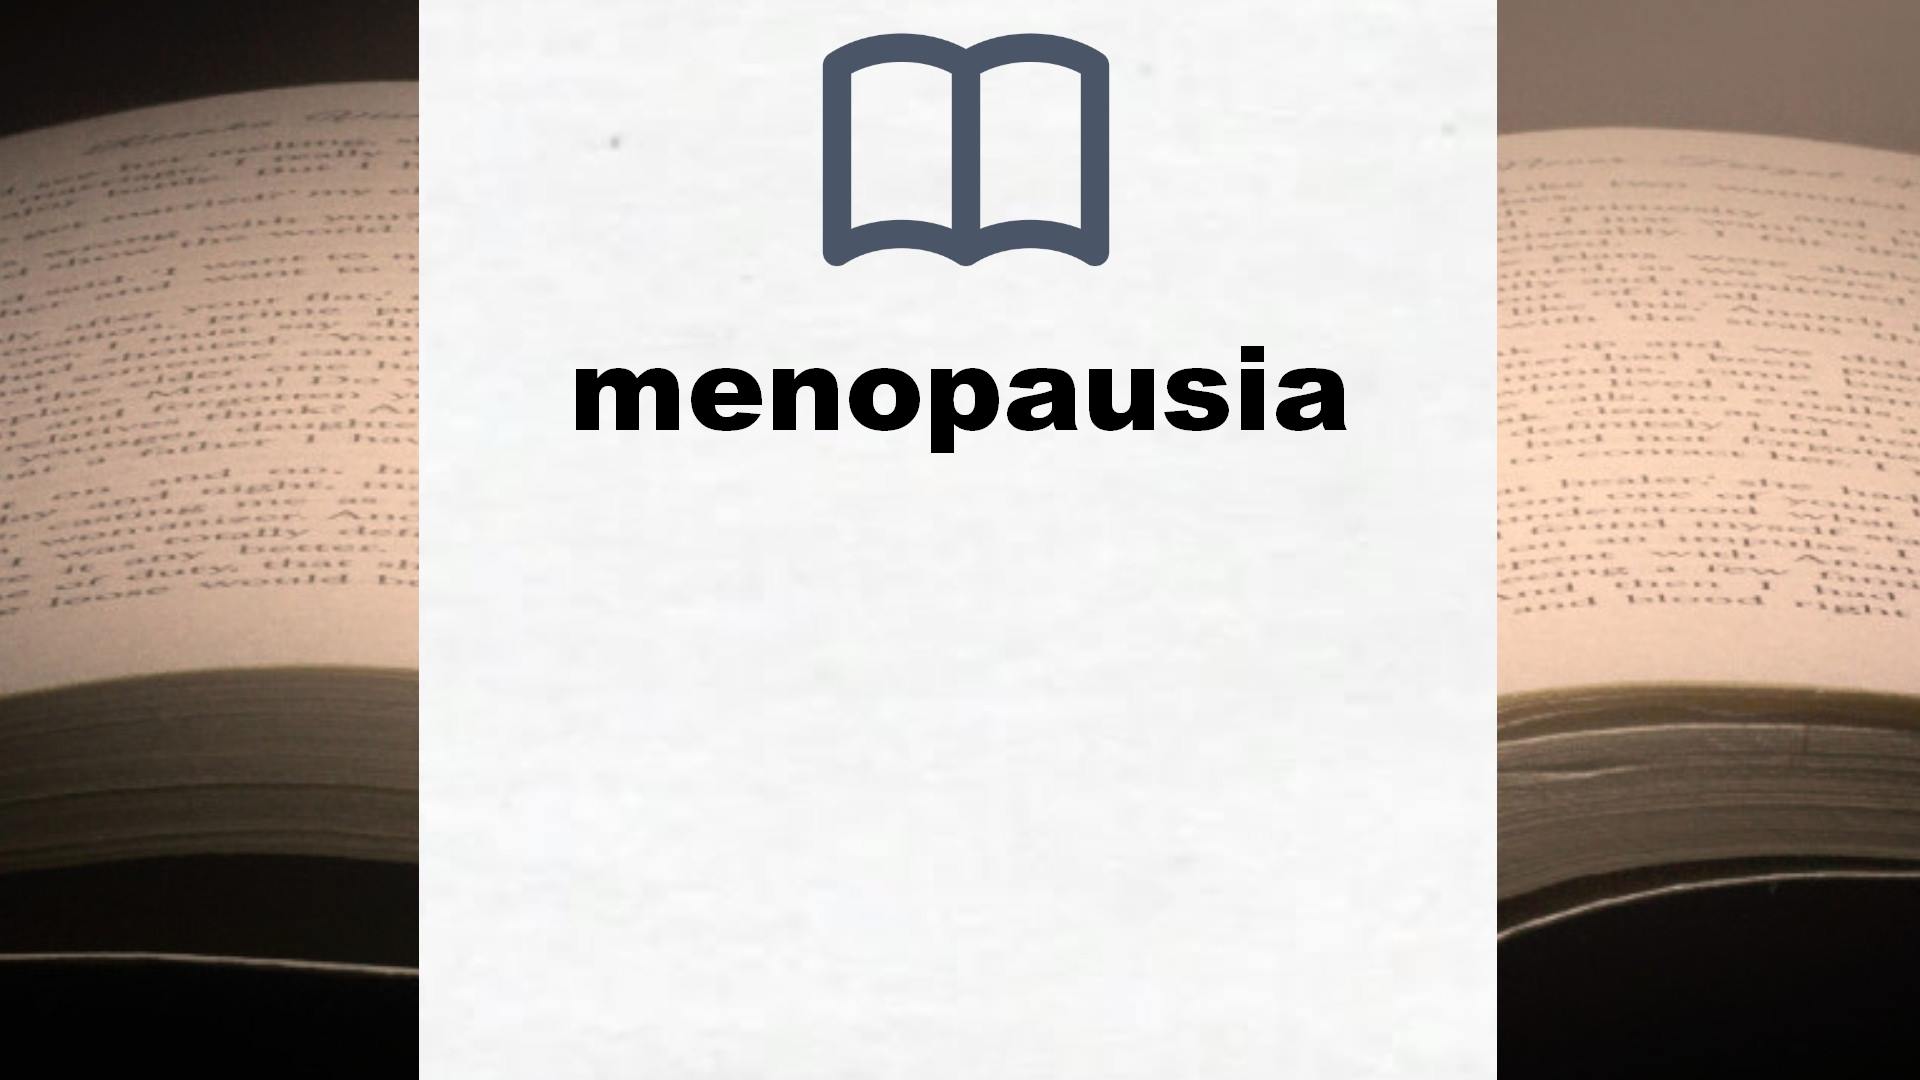 Libros sobre menopausia